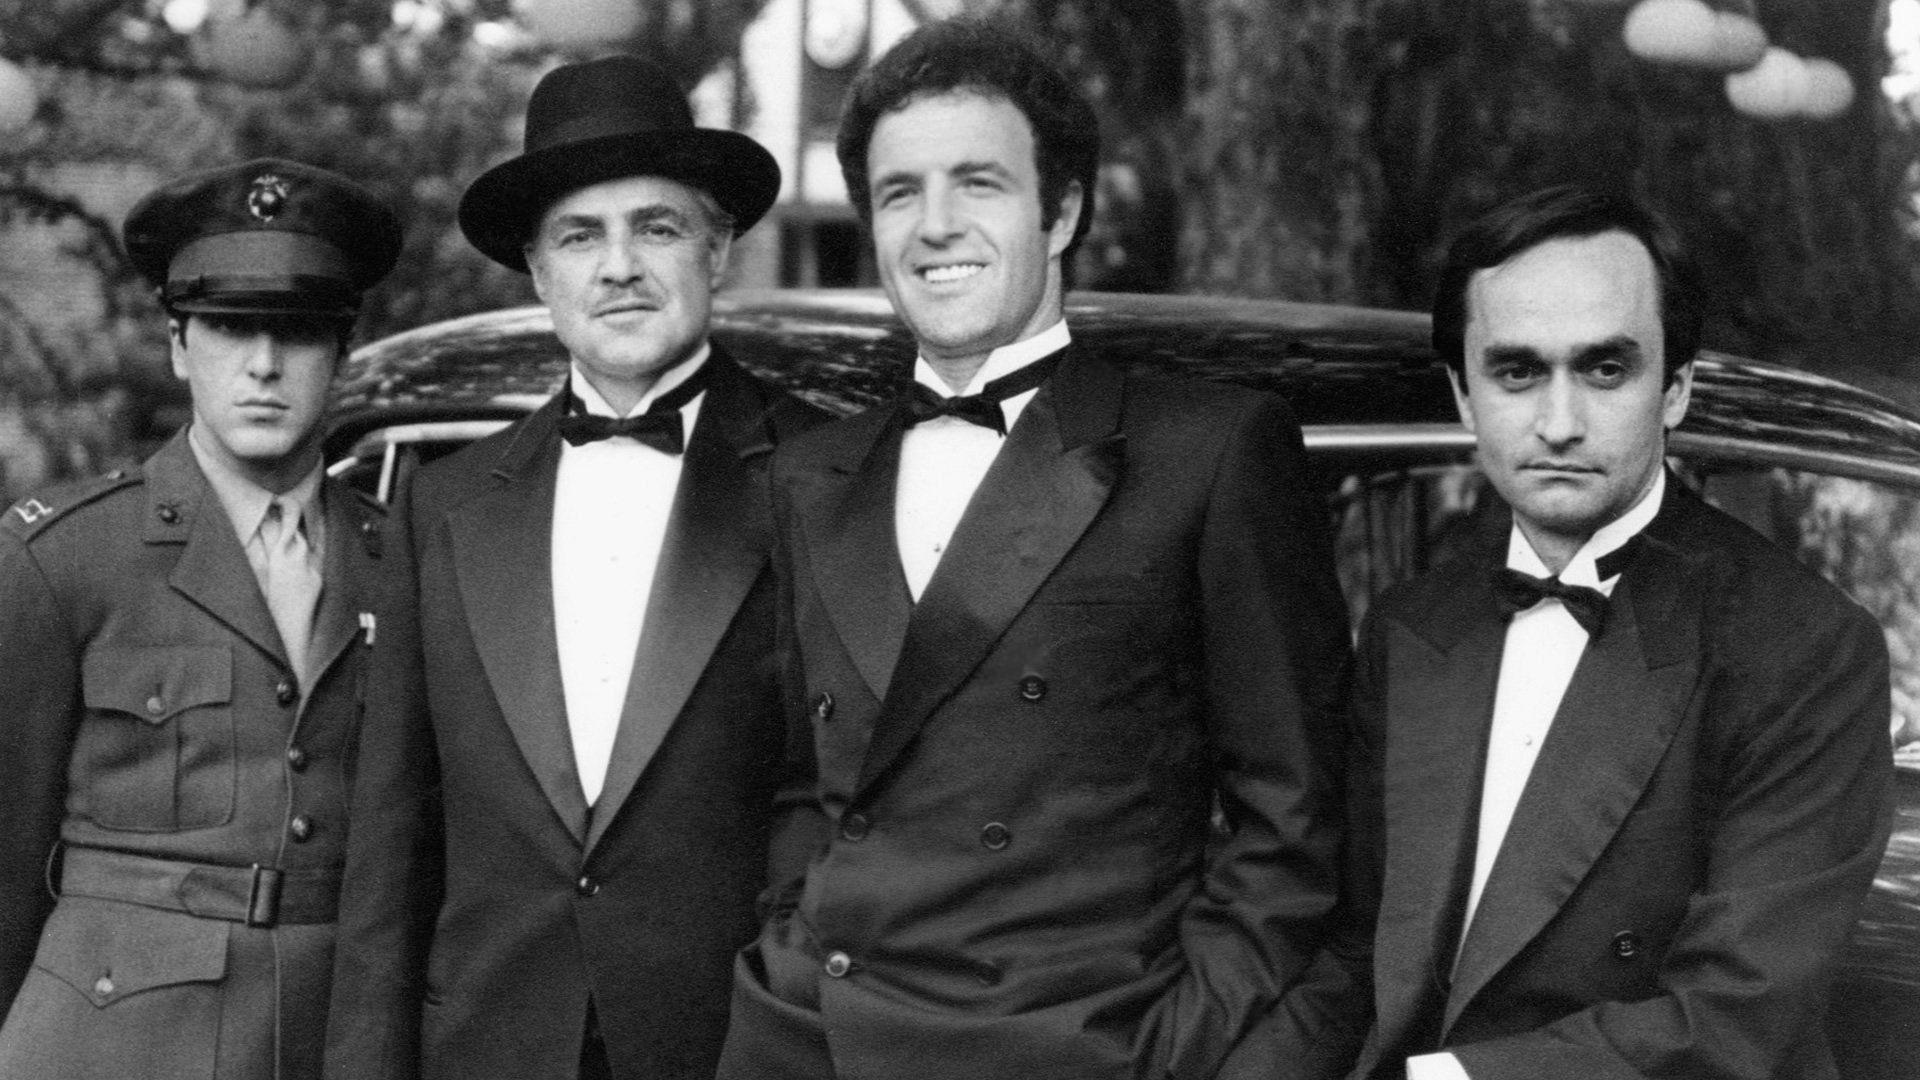 Phim 1920x1080, Đàn ông, Diễn viên, Huyền thoại, Bố già, Vito Corleone, Michael